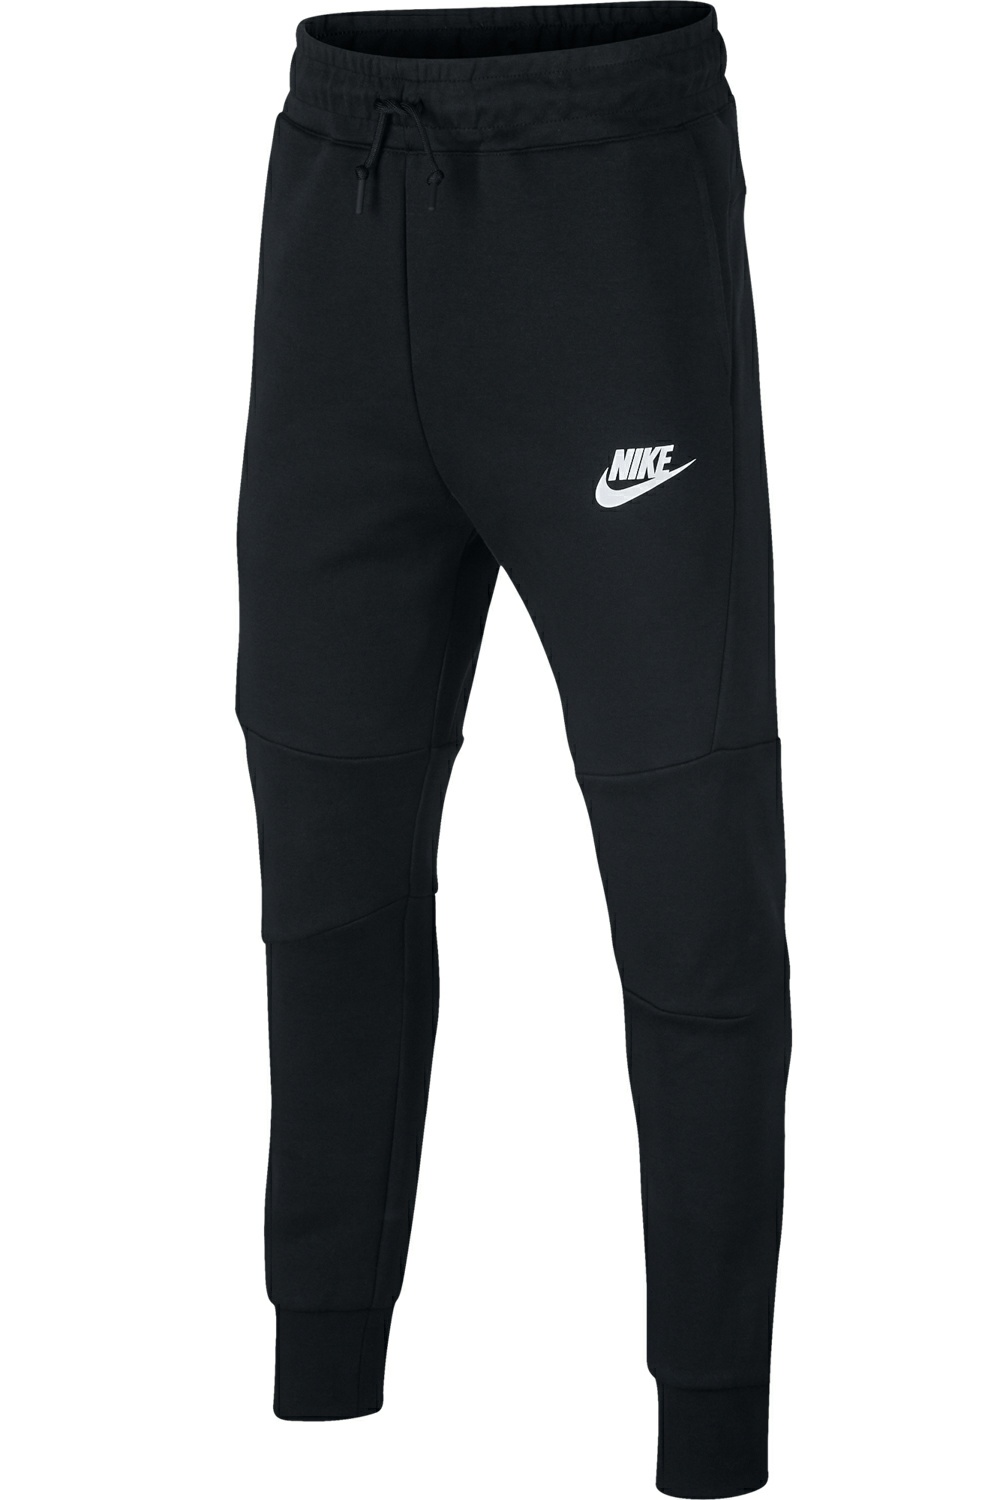 NIKE Παιδική αγορίστικη φόρμα Nike Sportswear Tech Fleece μαύρη